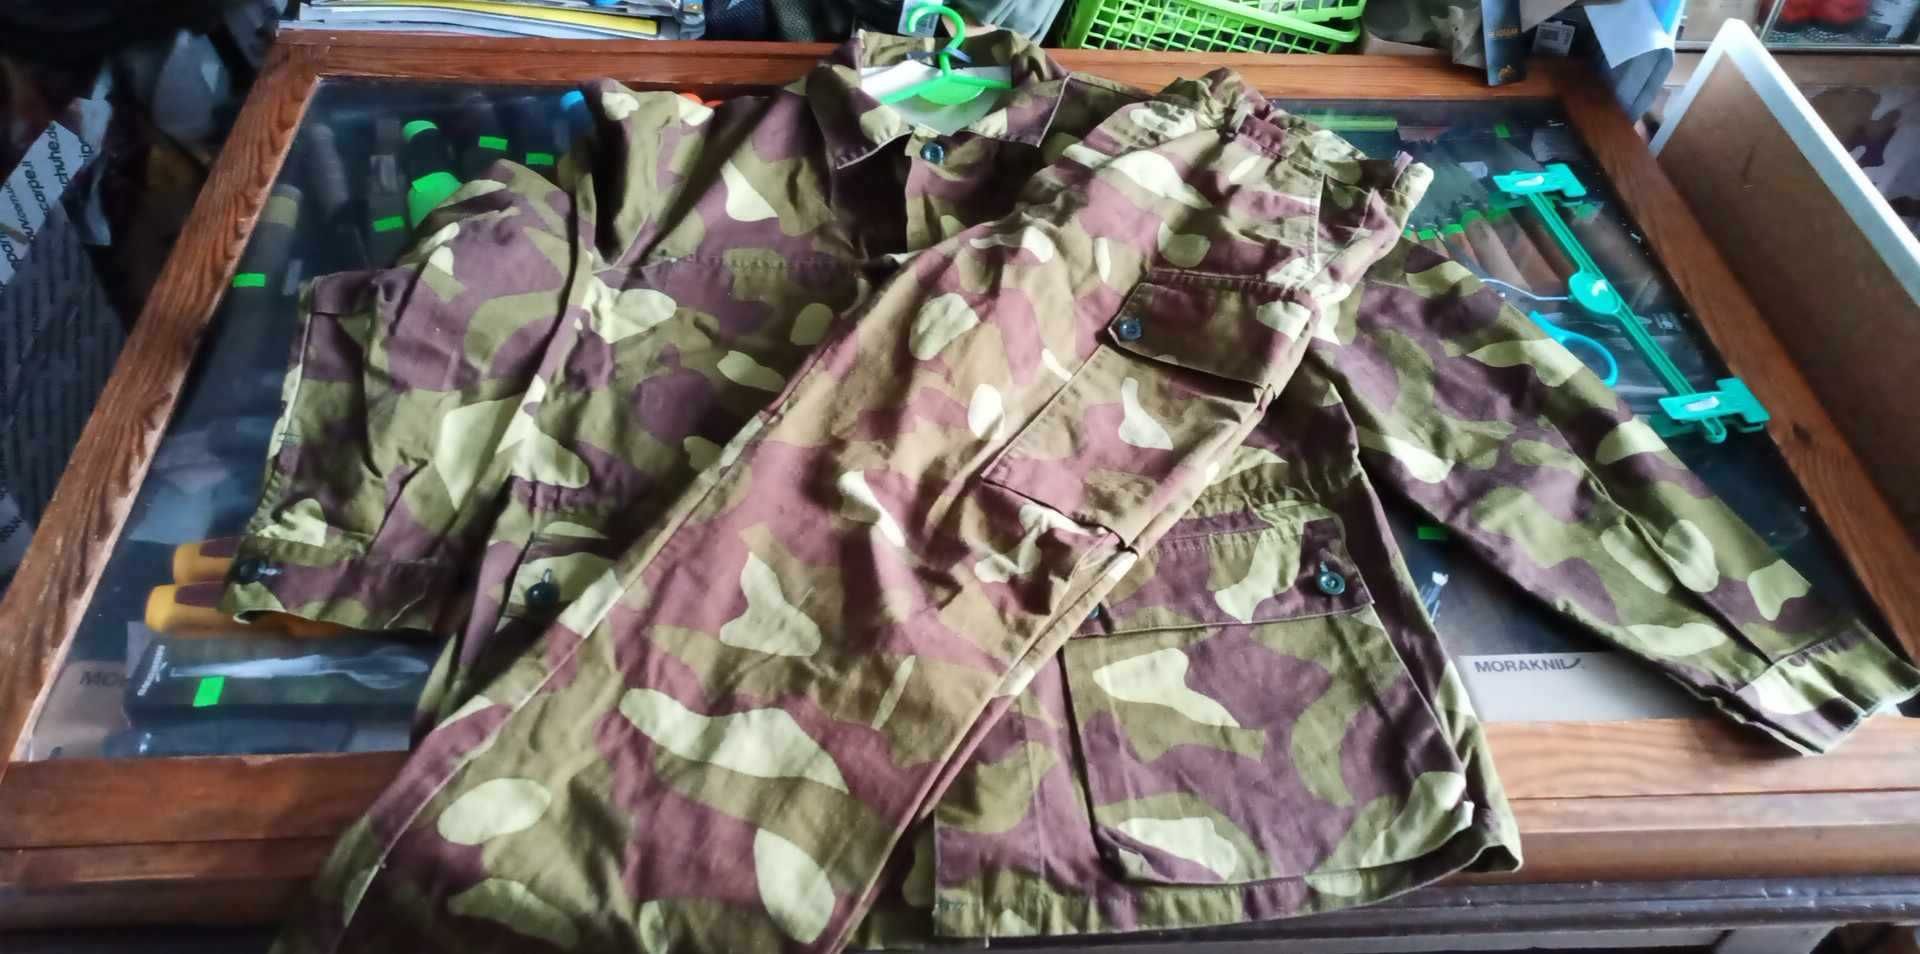 Mundur Armia Finlandia camo M62 spodnie pas96 +kurtka124 BDB Unikat